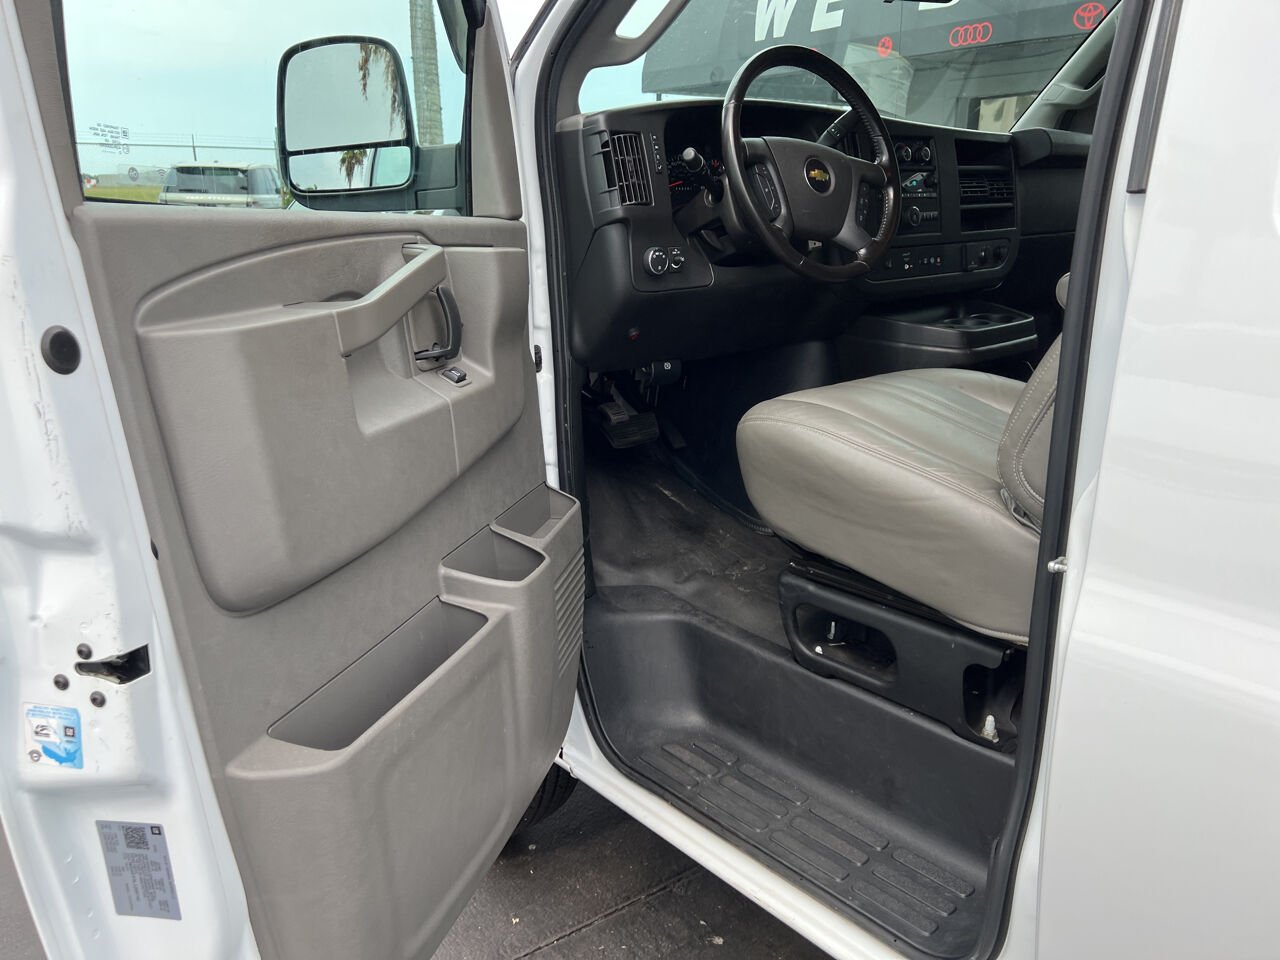 2020 Chevrolet Express Van - $28,900